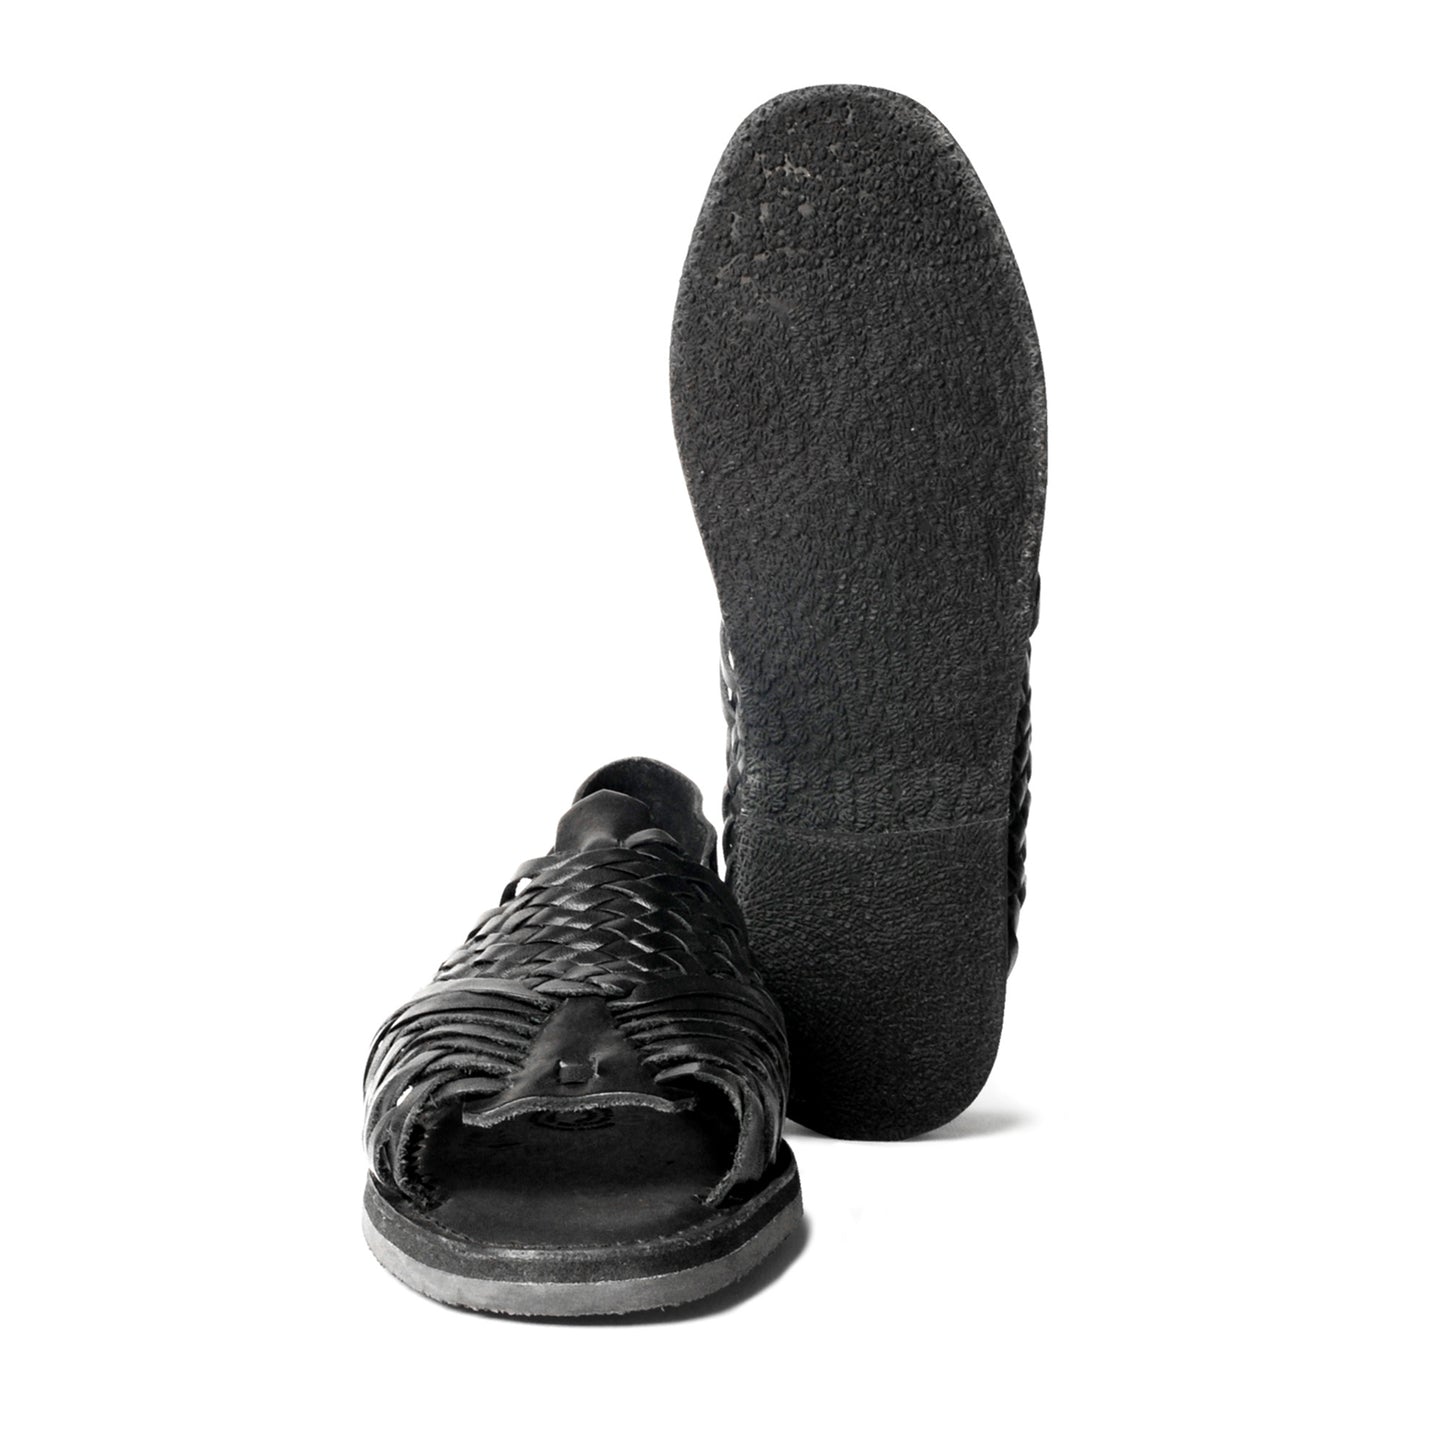 GDL Sandals, Black